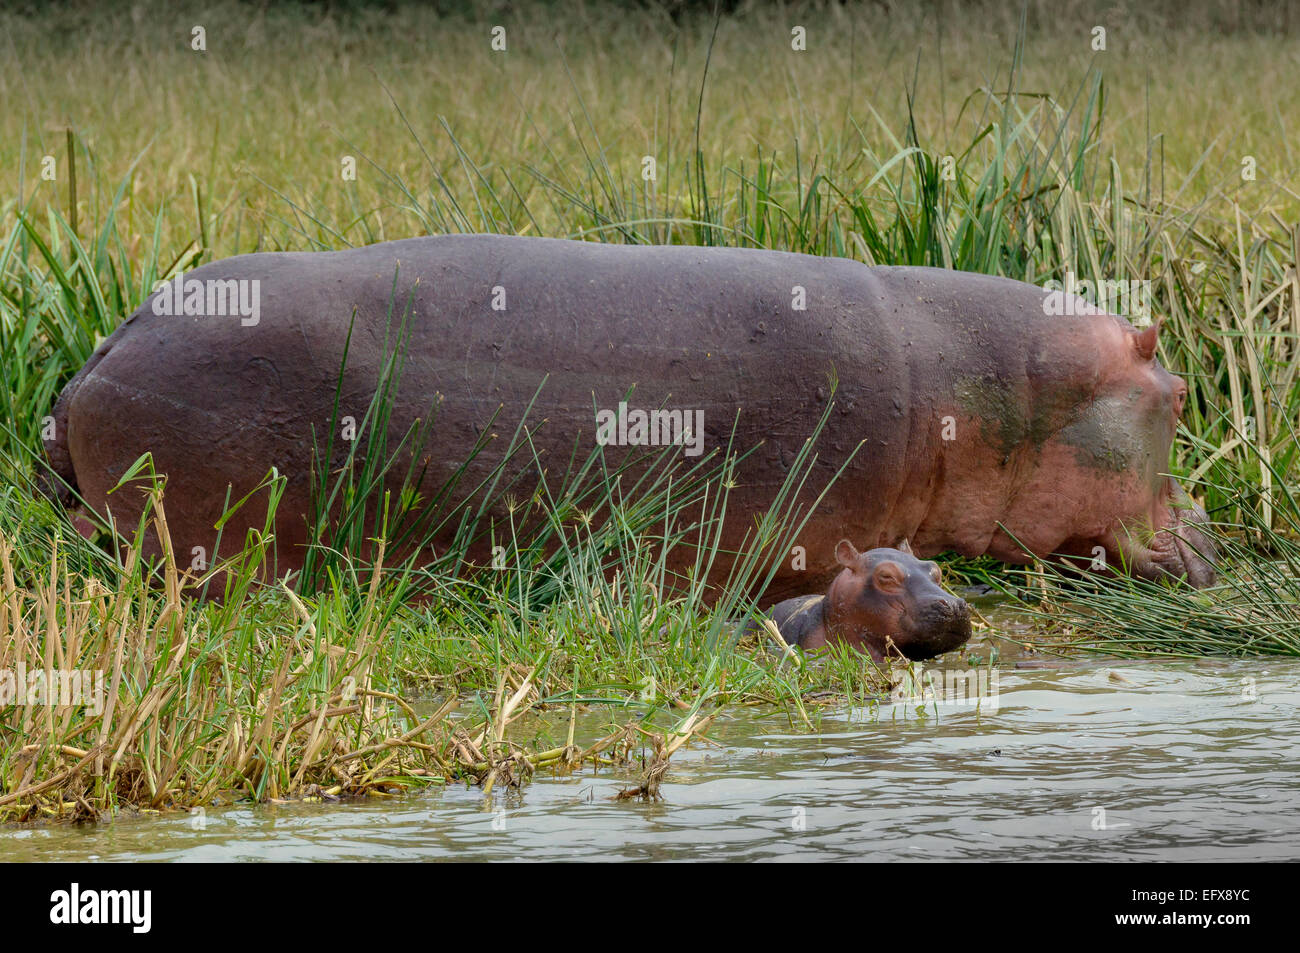 Hippoptamus Amphibius in freier Wildbahn - eine Mutter und Kind am Ufer des Lake Edward, QENP, Uganda. Uganda Wildlife Natur Stockfoto